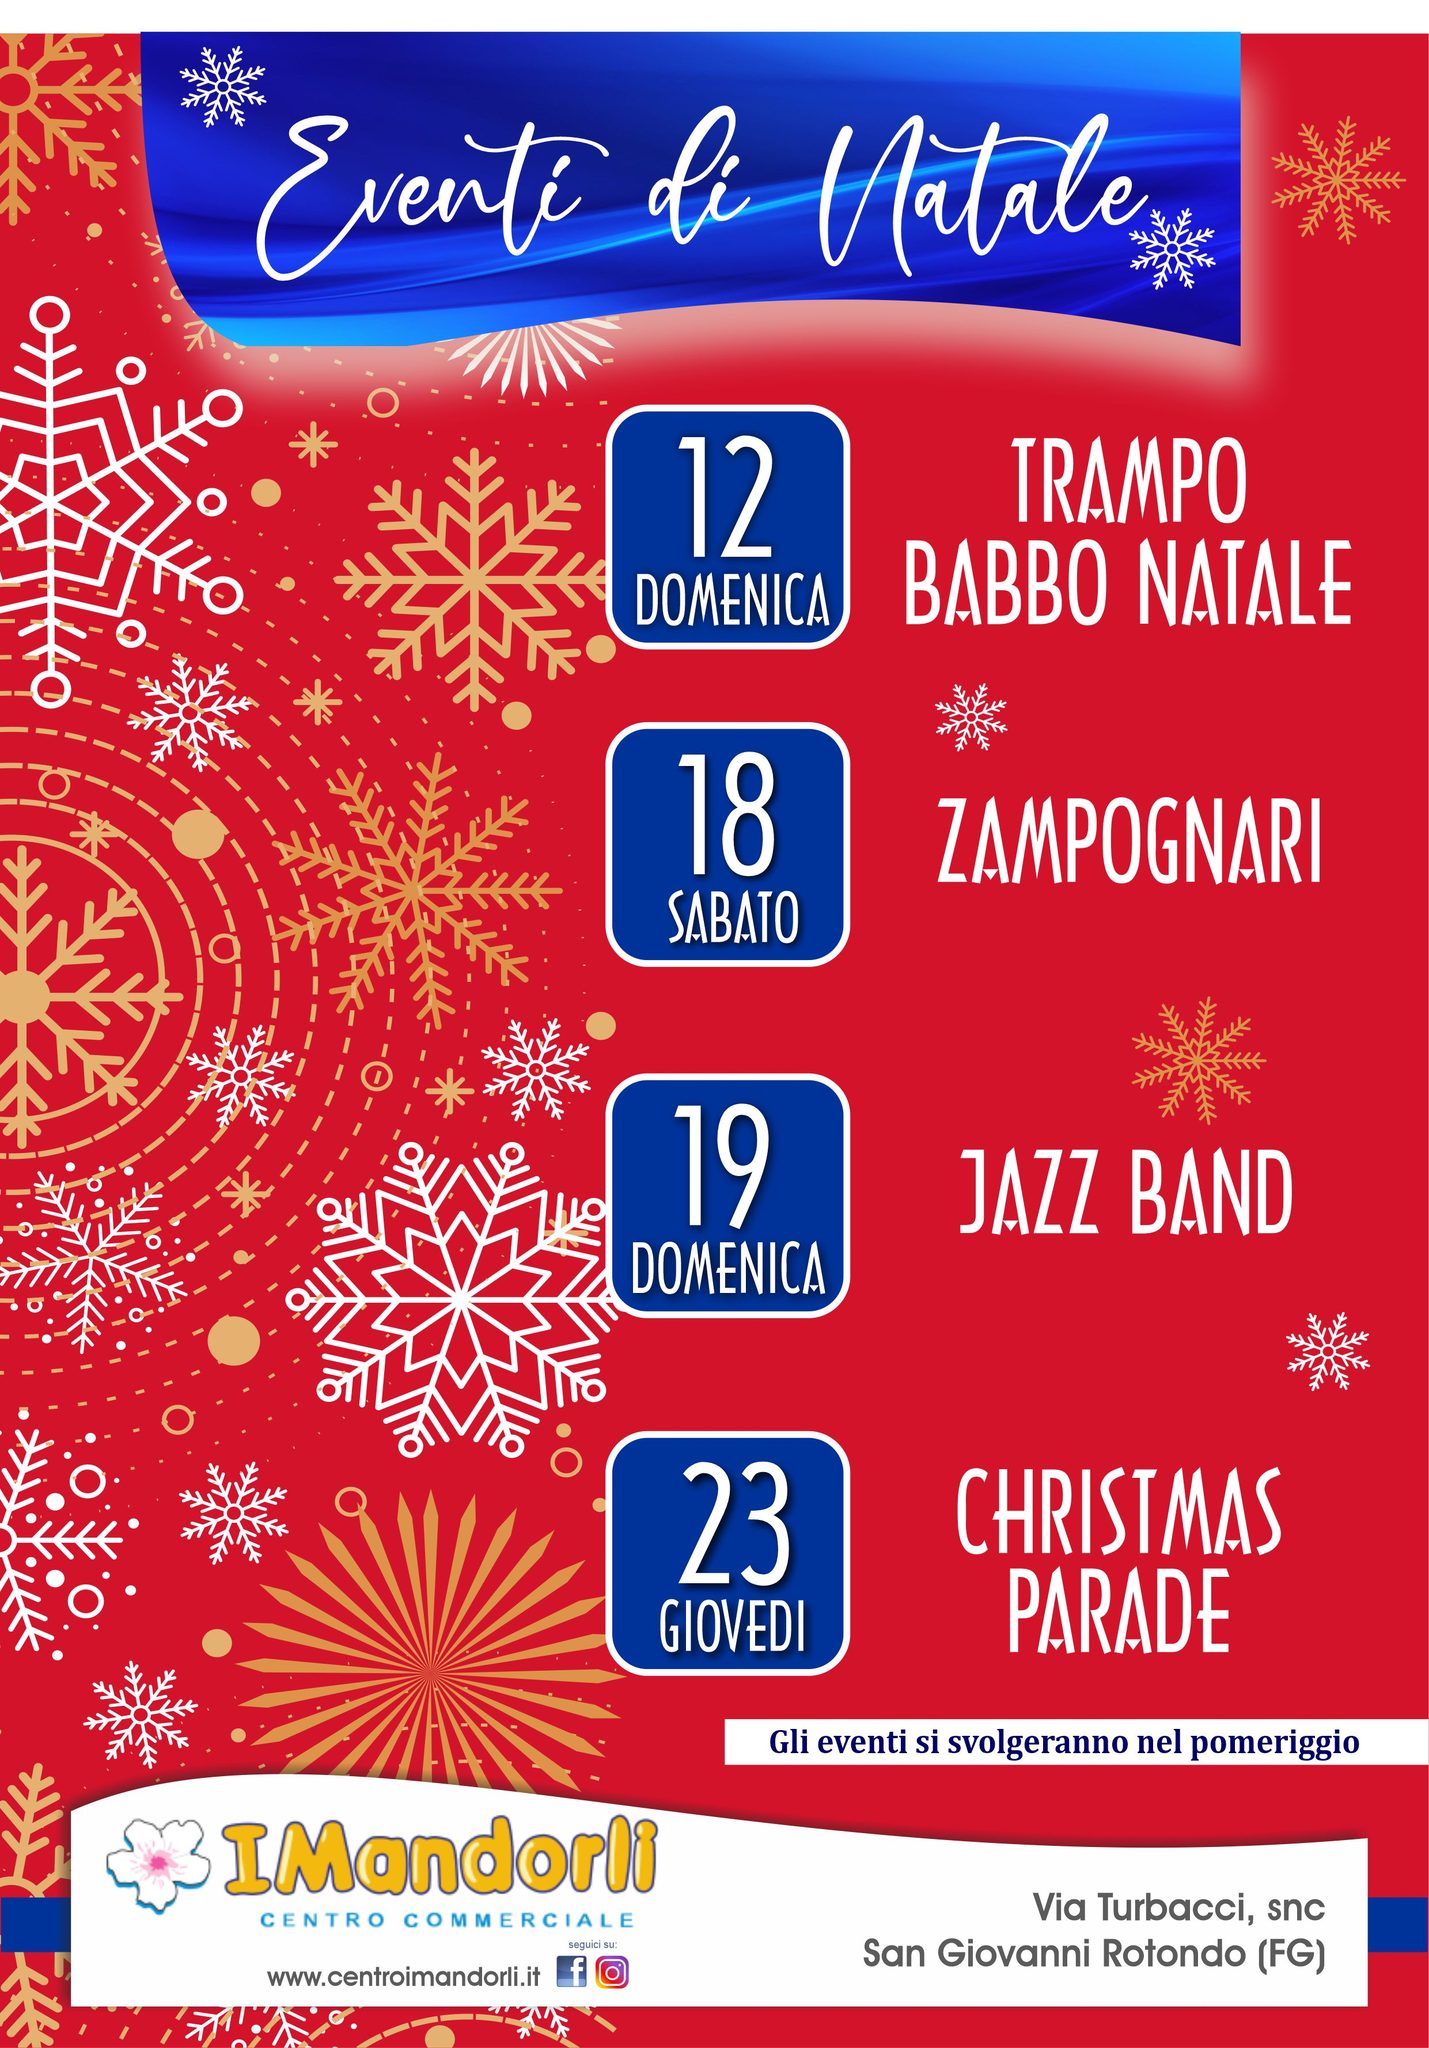 Eventi di Natale 12 e 18/12 – Trampo Babbo Natale & Zampognari